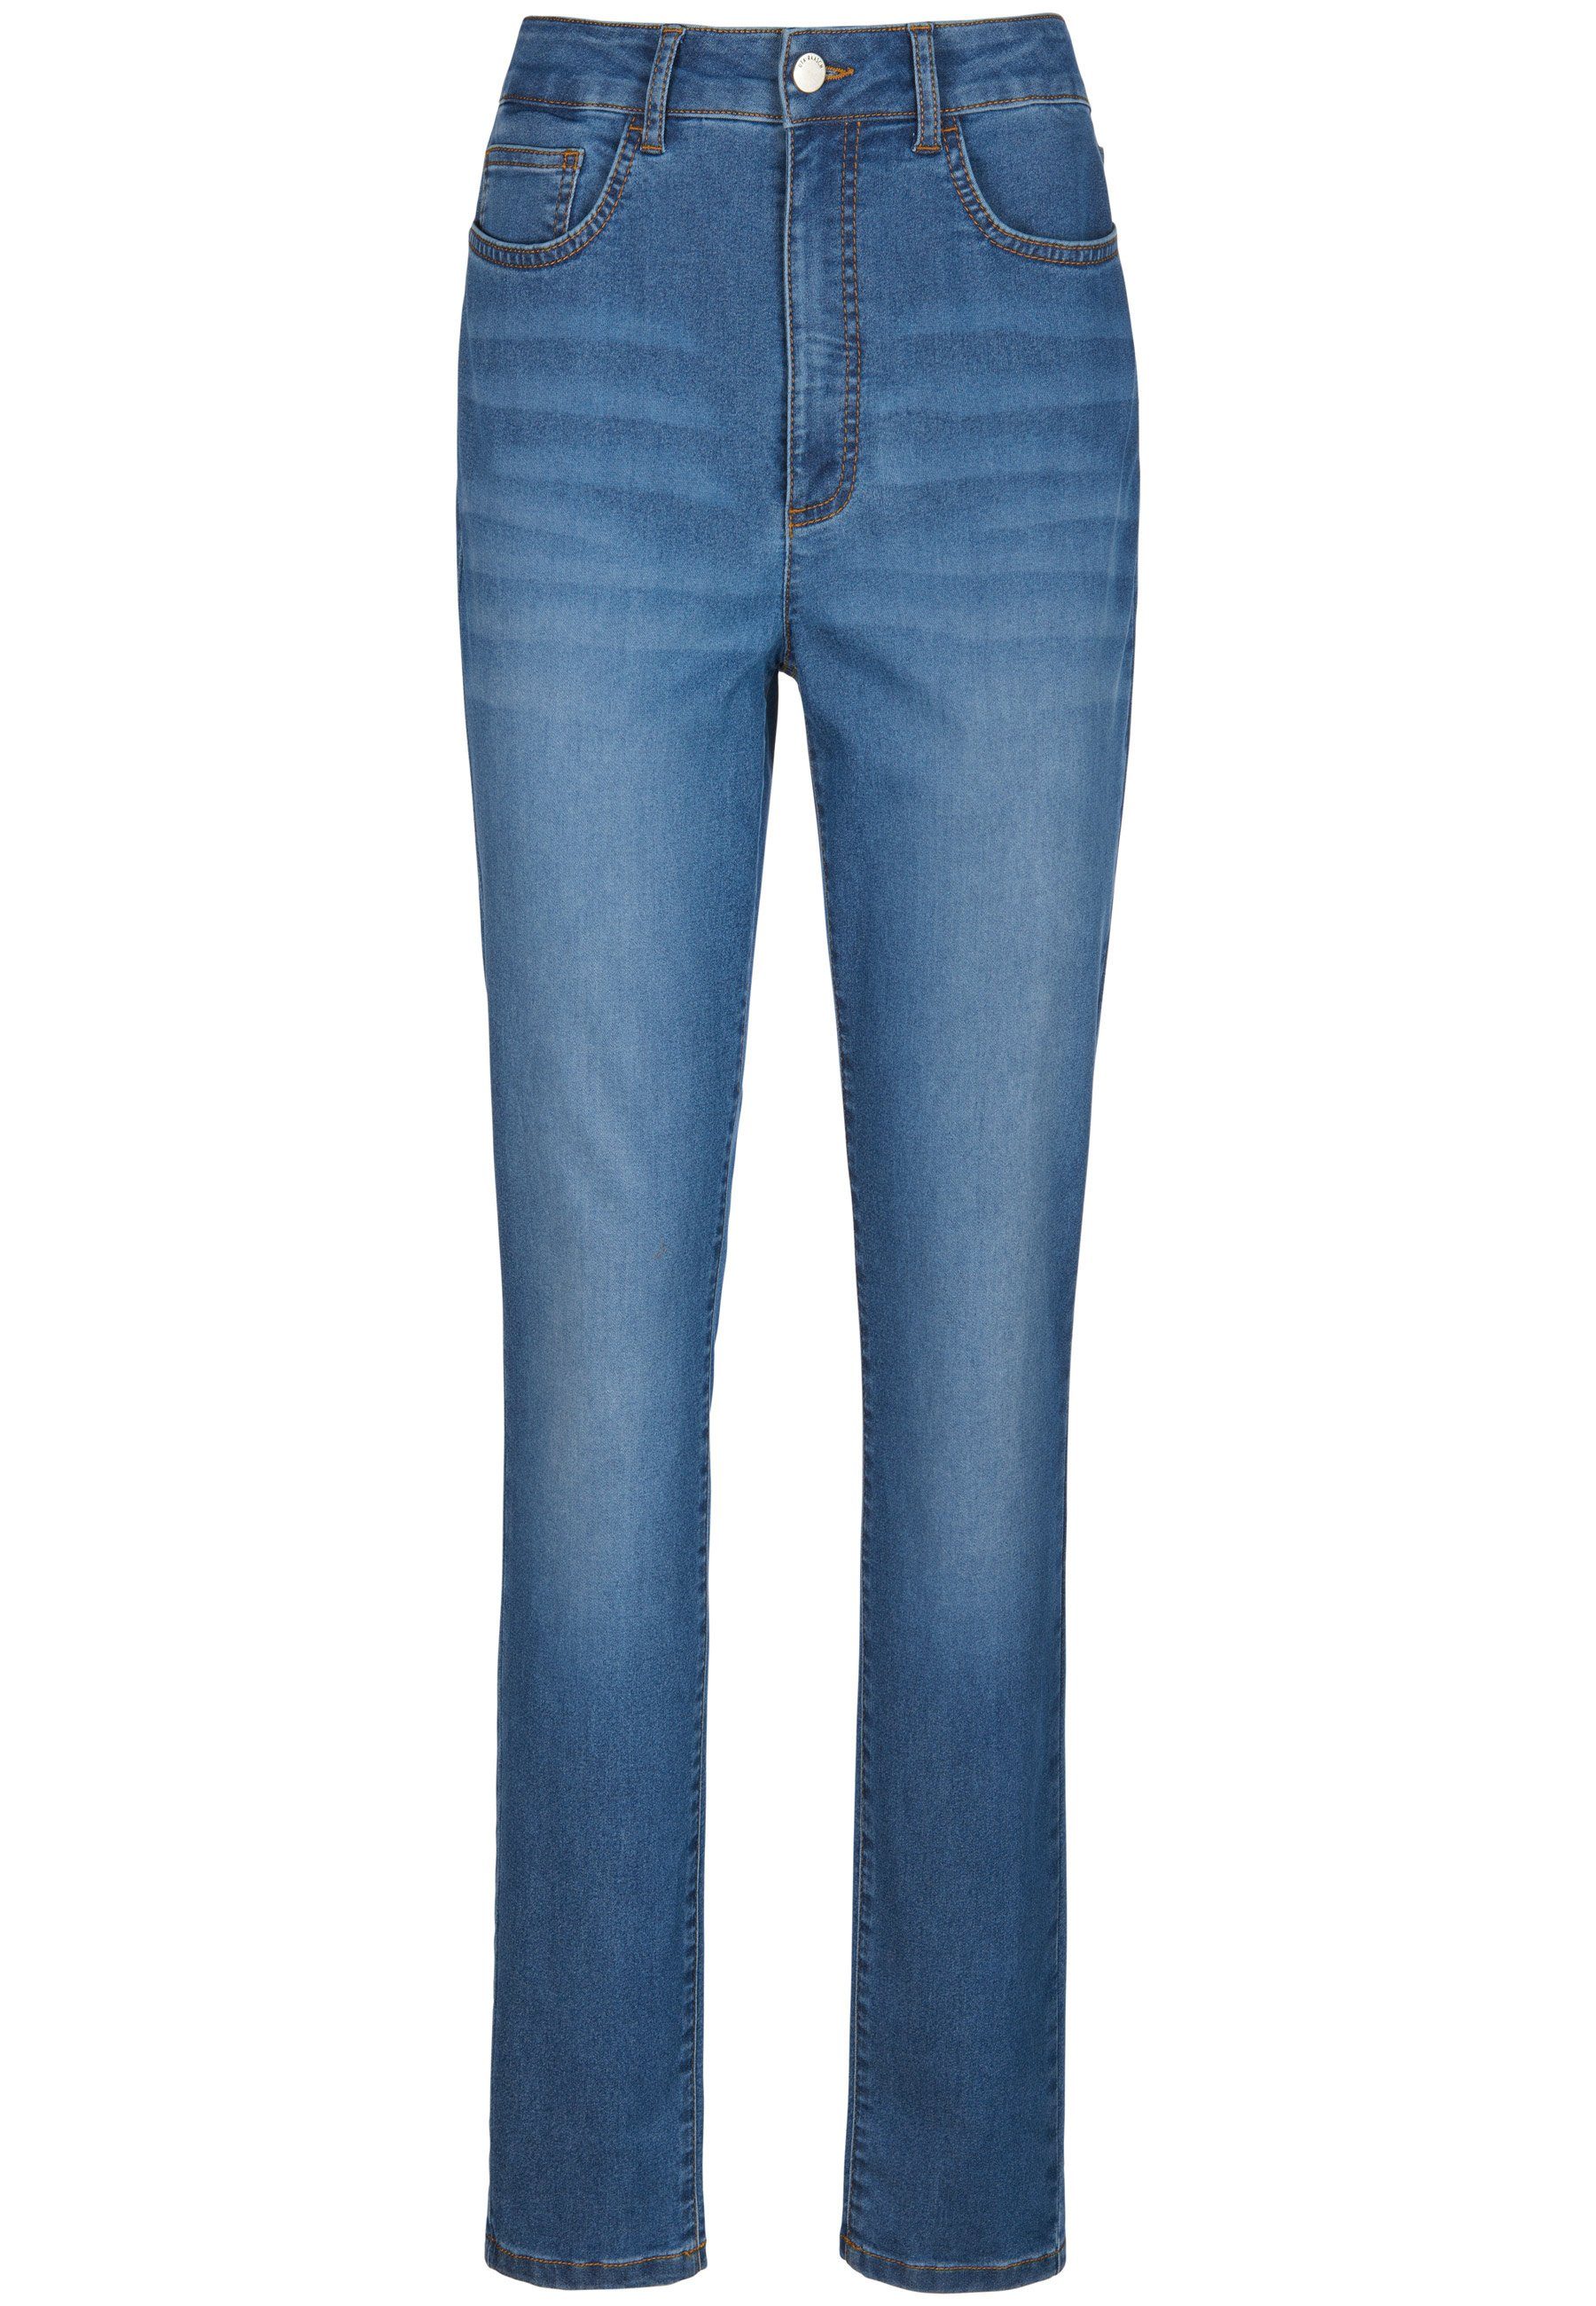 blue_denim Uta 5-Pocket-Jeans Raasch mit Cotton Taschen